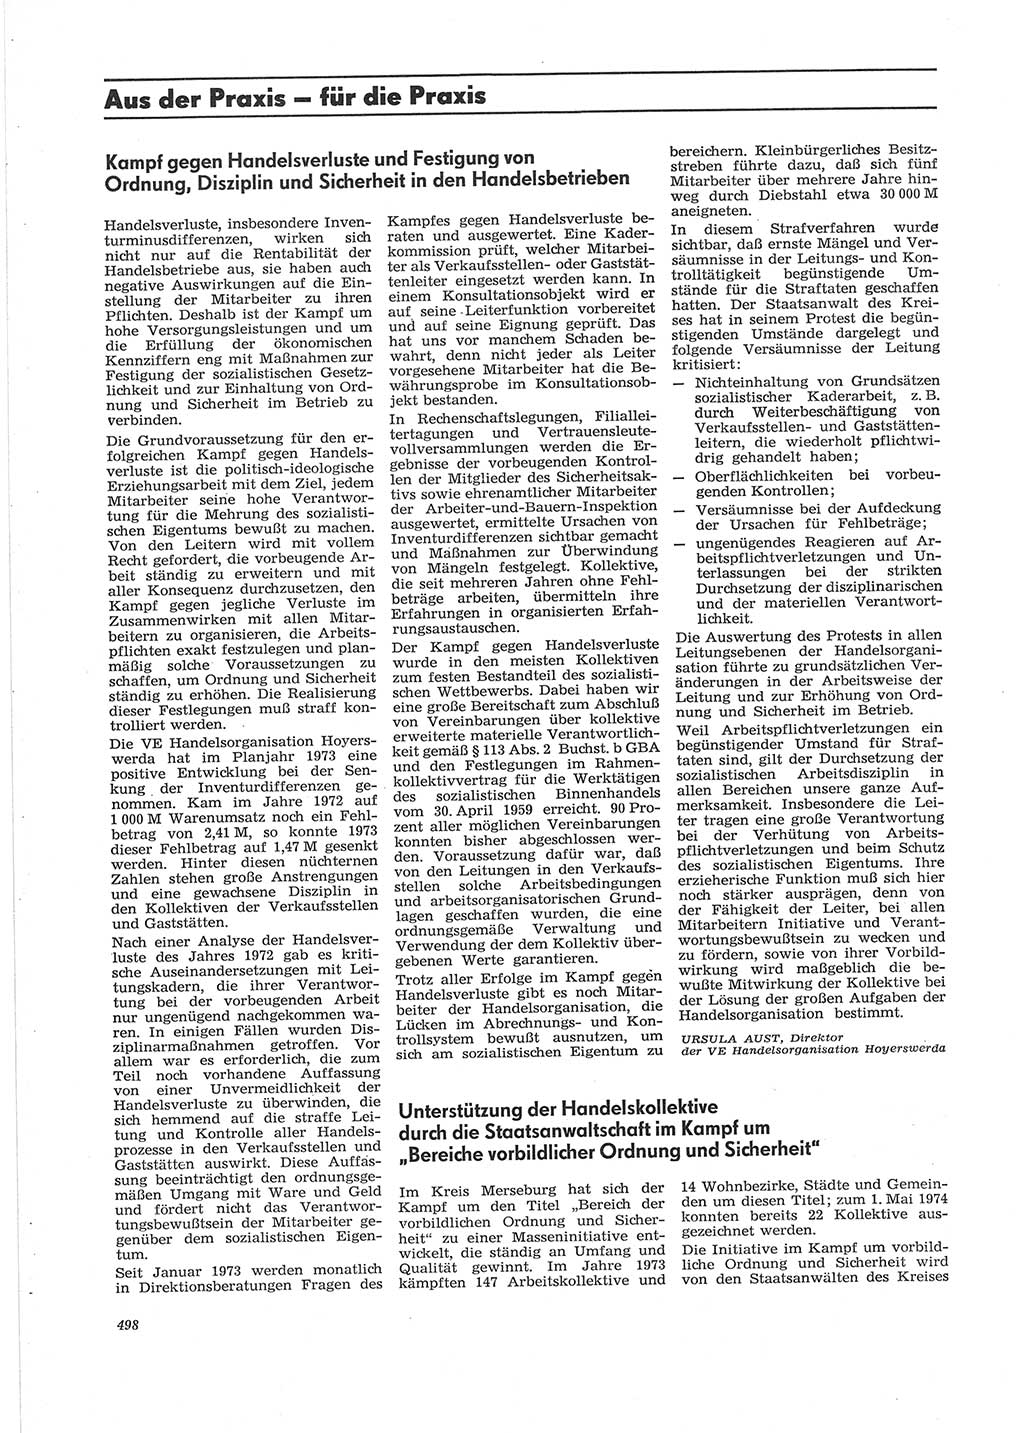 Neue Justiz (NJ), Zeitschrift für Recht und Rechtswissenschaft [Deutsche Demokratische Republik (DDR)], 28. Jahrgang 1974, Seite 498 (NJ DDR 1974, S. 498)